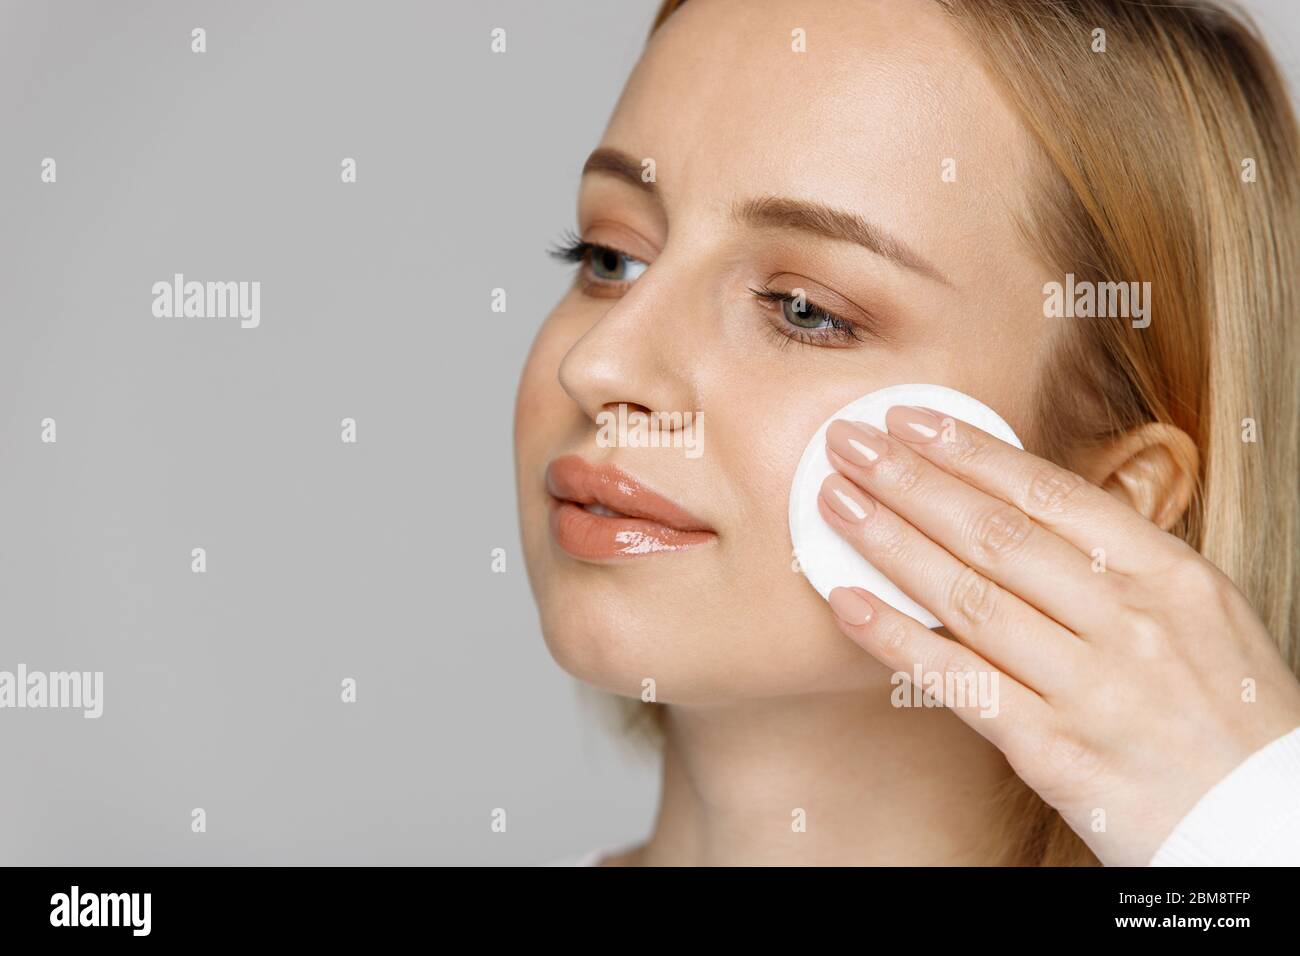 Junge blonde junge Frau Reinigung (Entfernen Make-up) ihr Gesicht mit Wattepad, isoliert auf grauem Hintergrund, kopieren Raum. Gesunde Hautpflege, Gesichtsbehandlung Stockfoto